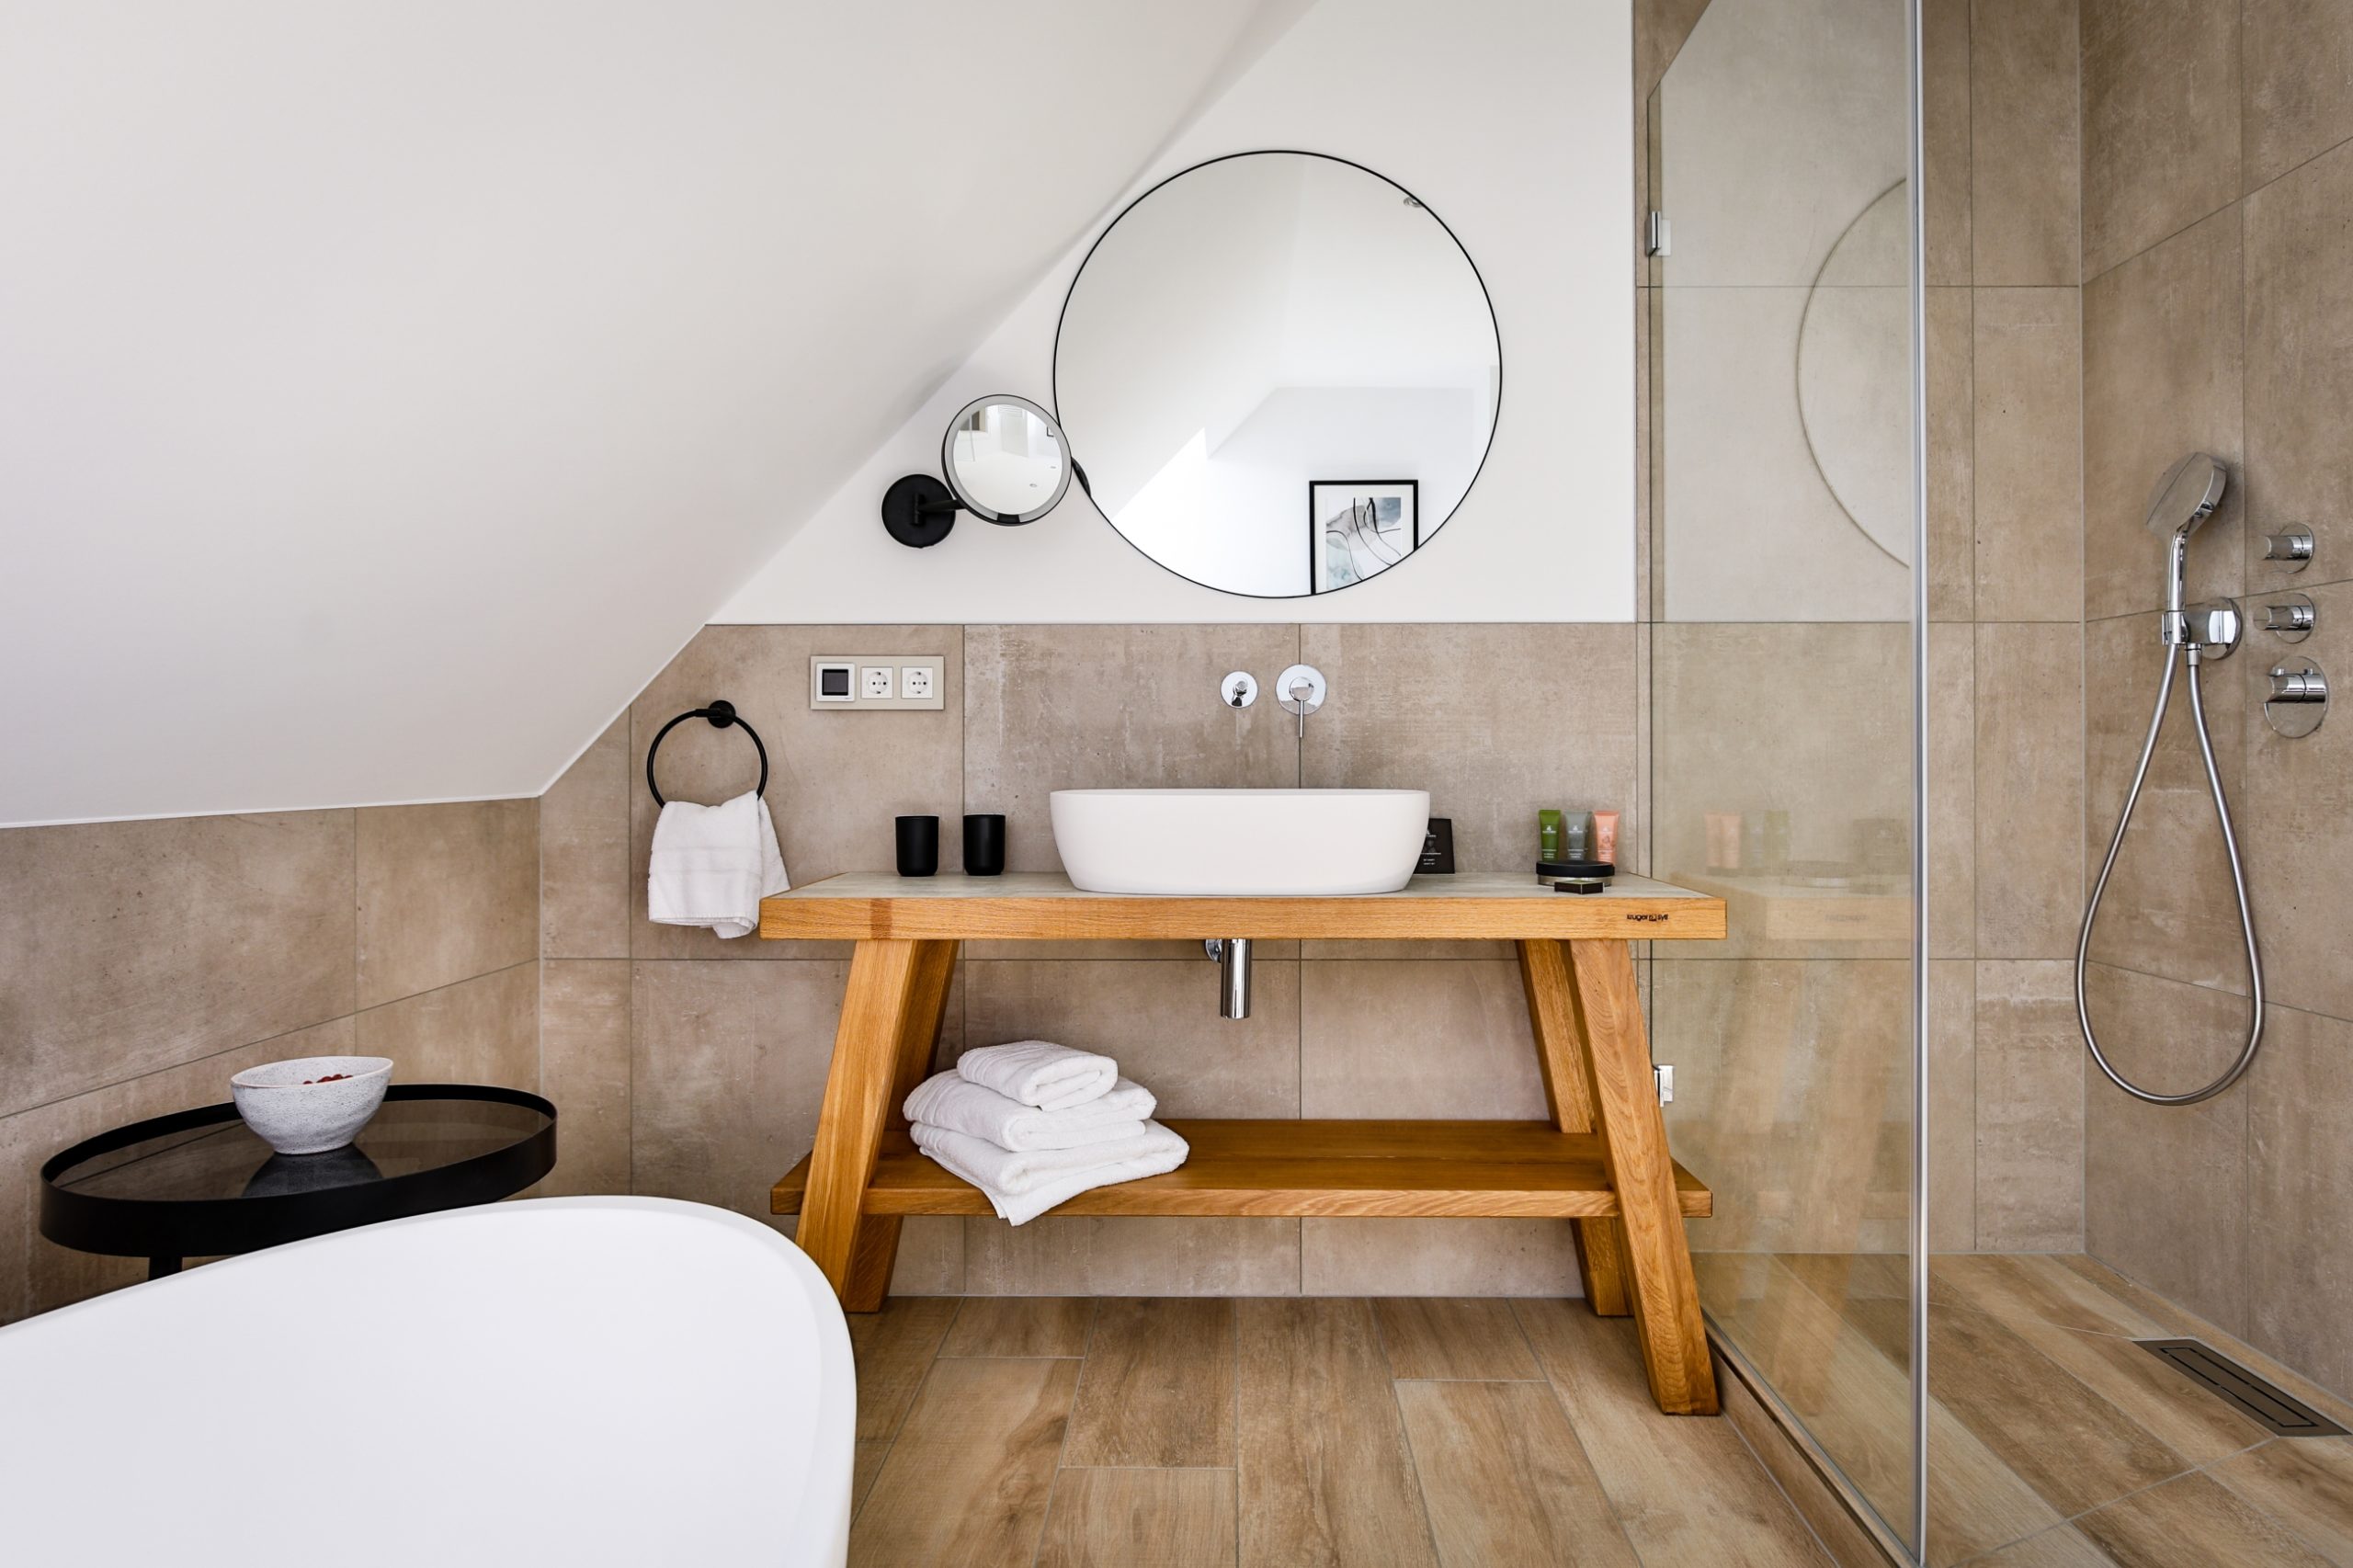 Das Bild zeigt ein modernes Badezimmer mit Dusche und Badewanne im Hotel Landhaus Sylter Hahn in Westerland auf Sylt.